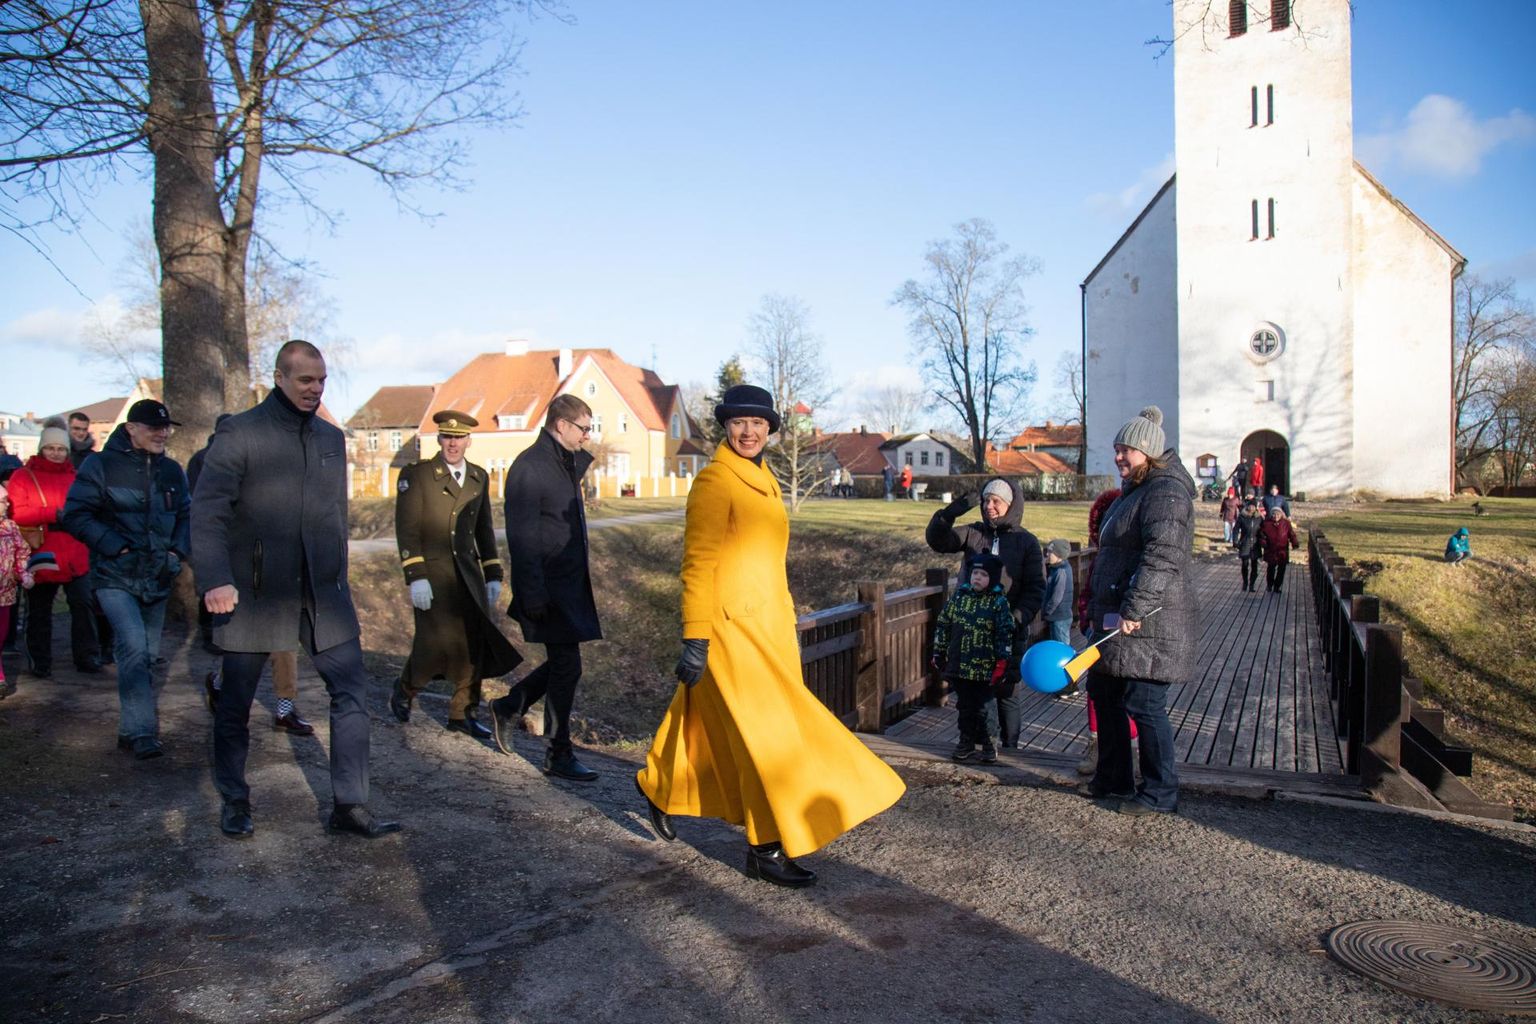 Viimati kohtus president Kersti Kaljulaid Viljandimaa inimestega Viljandi lauluväljakul 24. veebruaril mõni tund enne seda, kui Ugala teatris algas tema vastuvõtt.